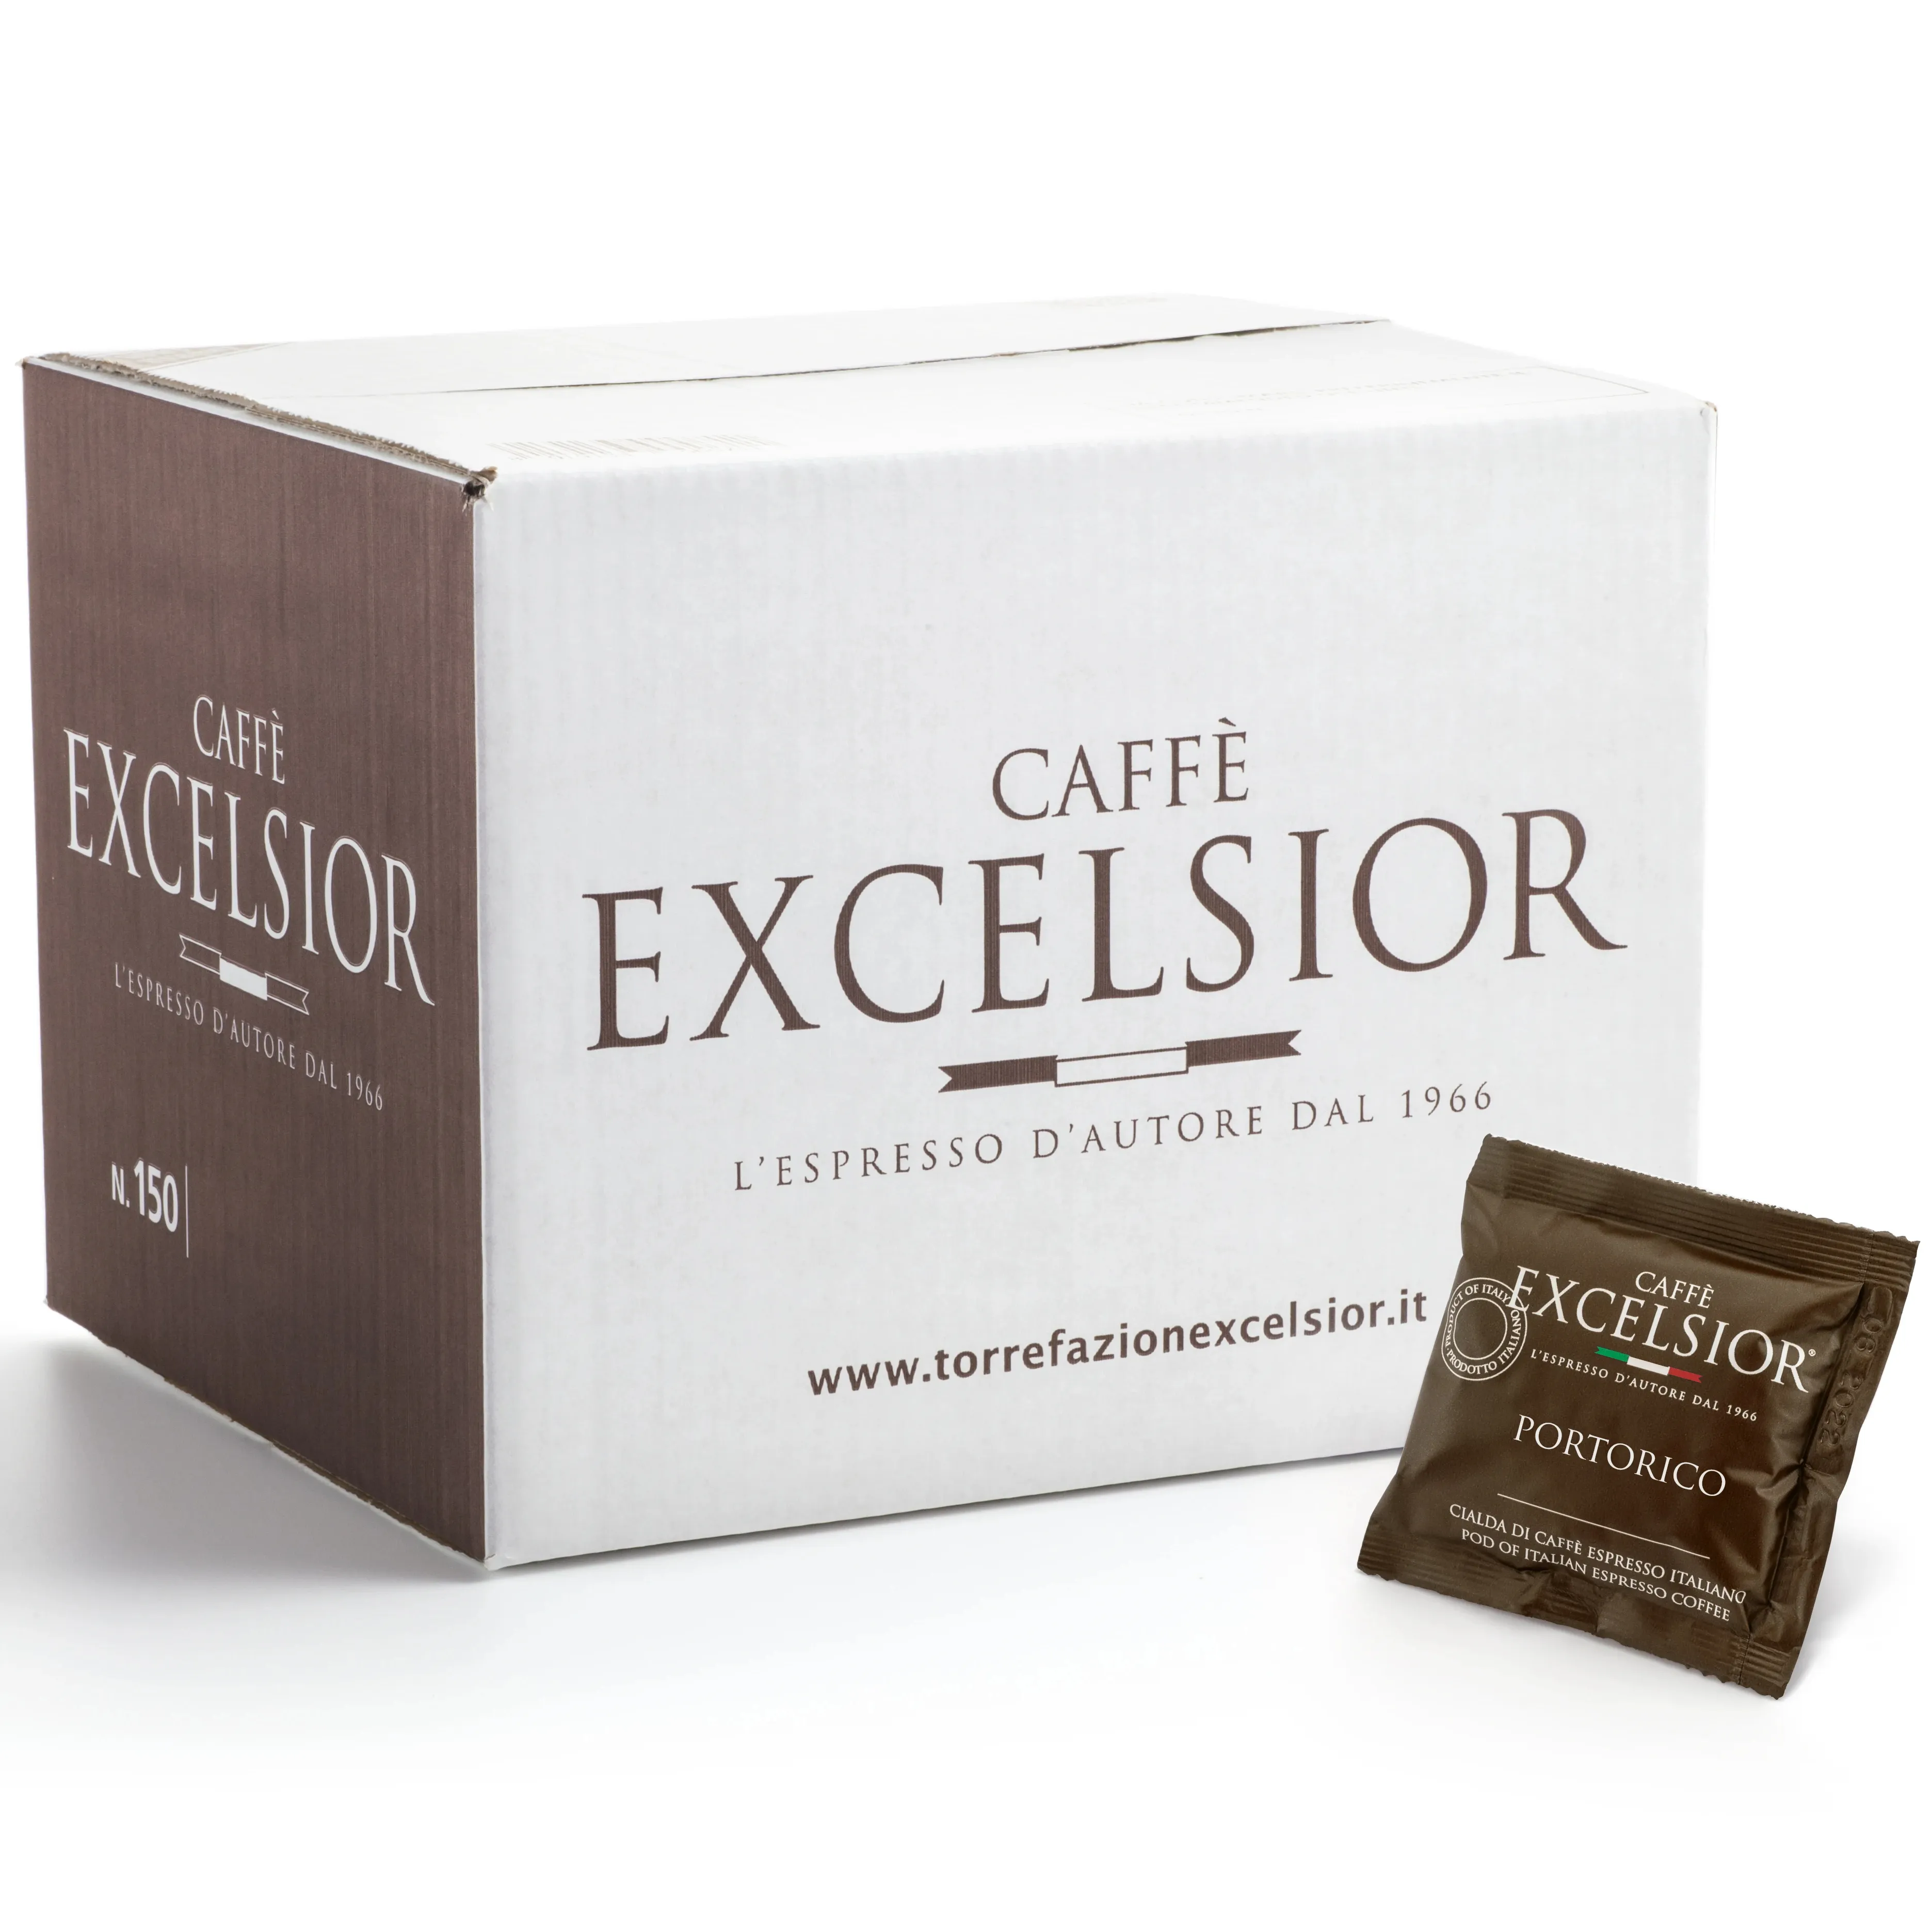 Trinkbarer biologisch abbaubarer Espresso kaffee mit Papier kapseln Made in Italy für den Export